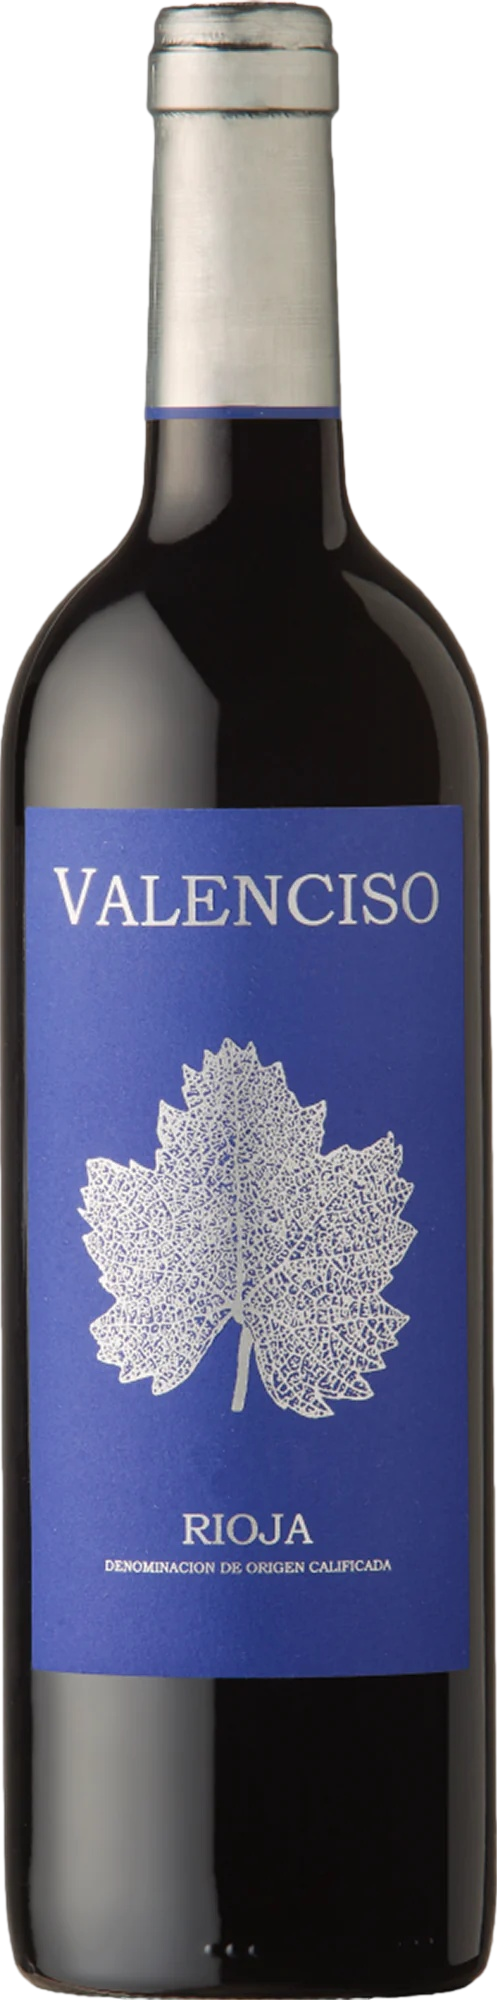 Valenciso Rioja Reserva 2016